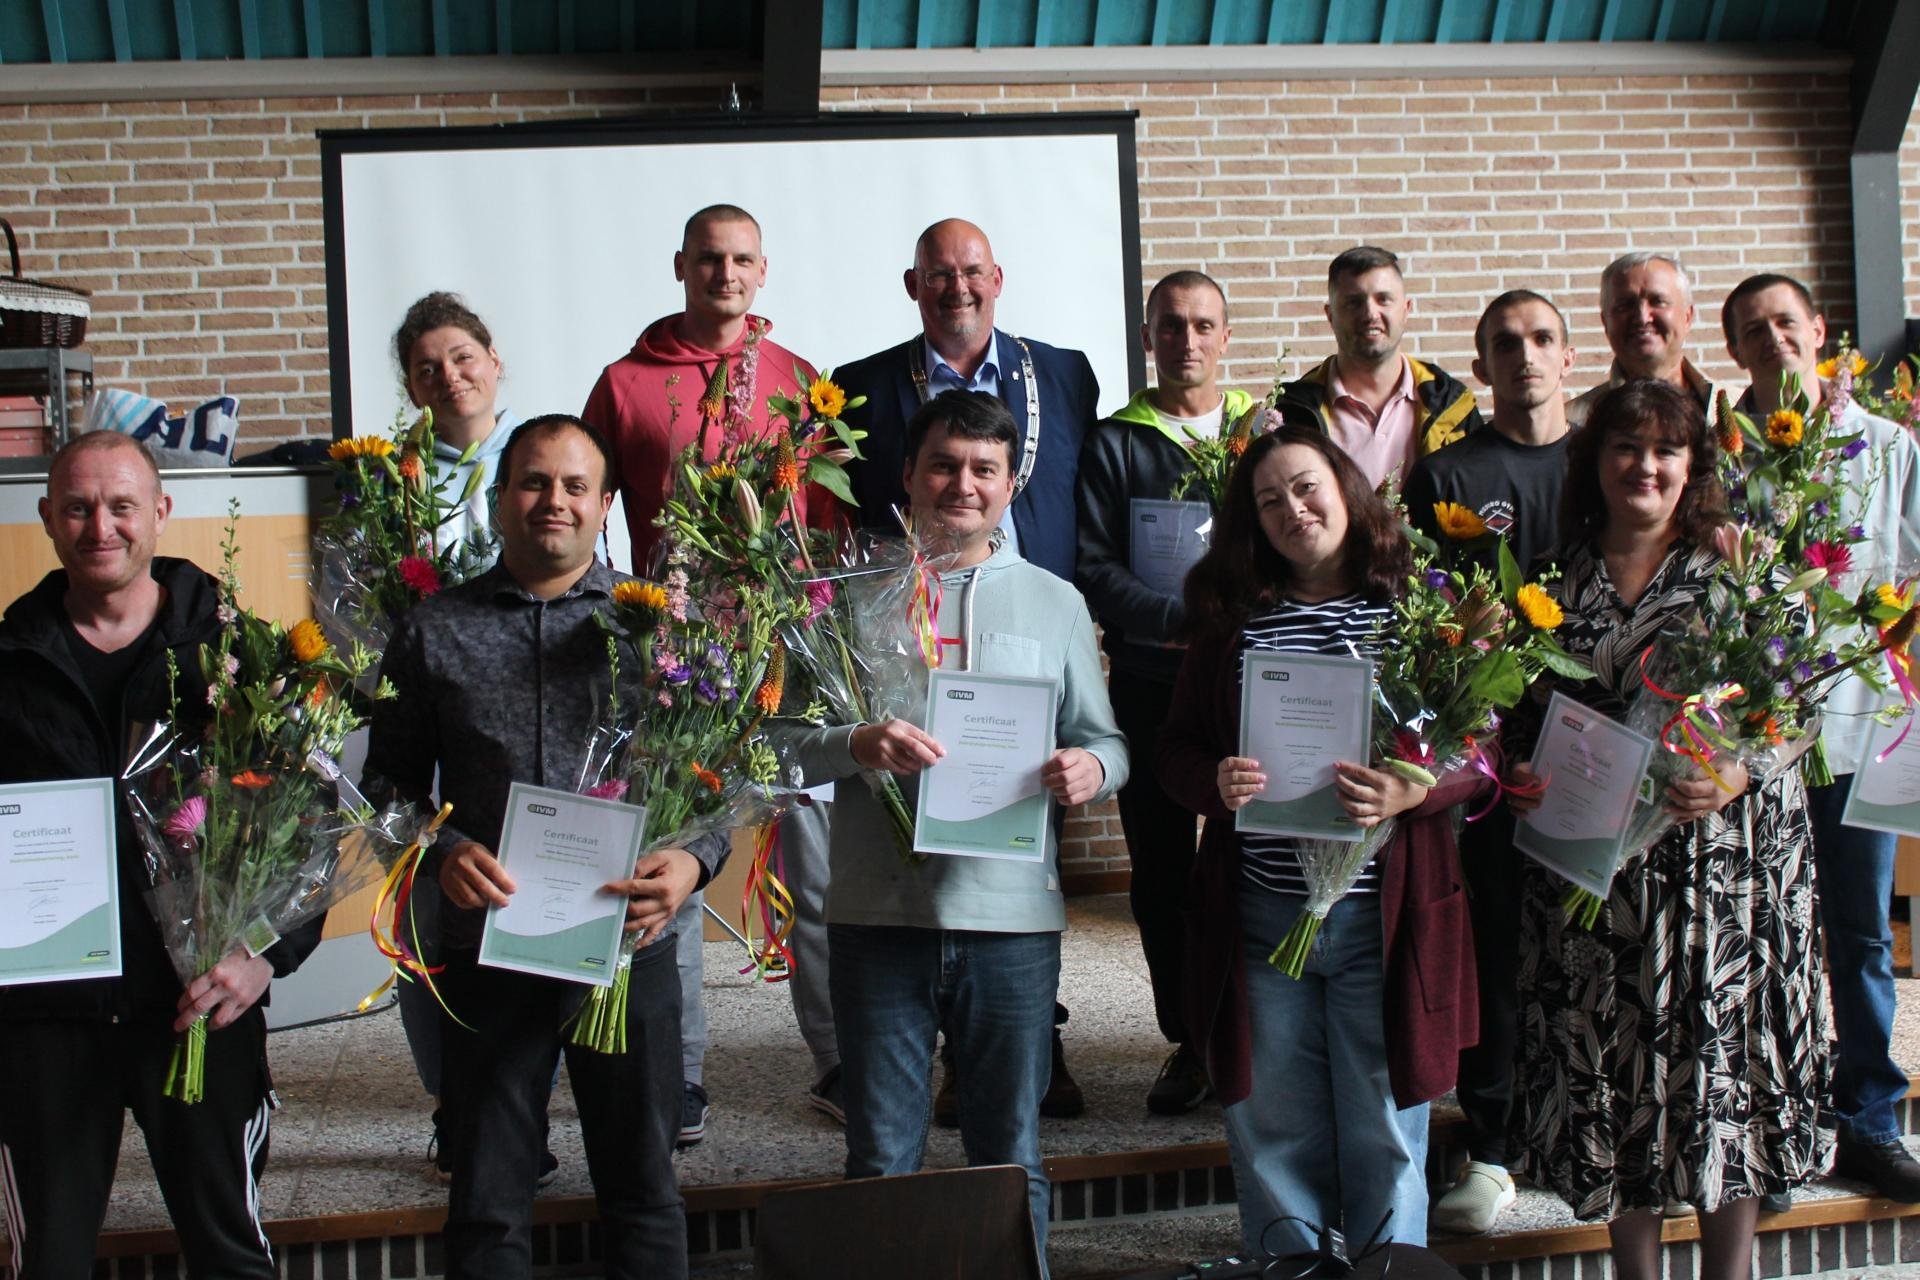 De twaalf Oekraïners samen met locoburgemeester Joop Slomp op de foto met hun zojuist ontvangen BHV-certificaat.